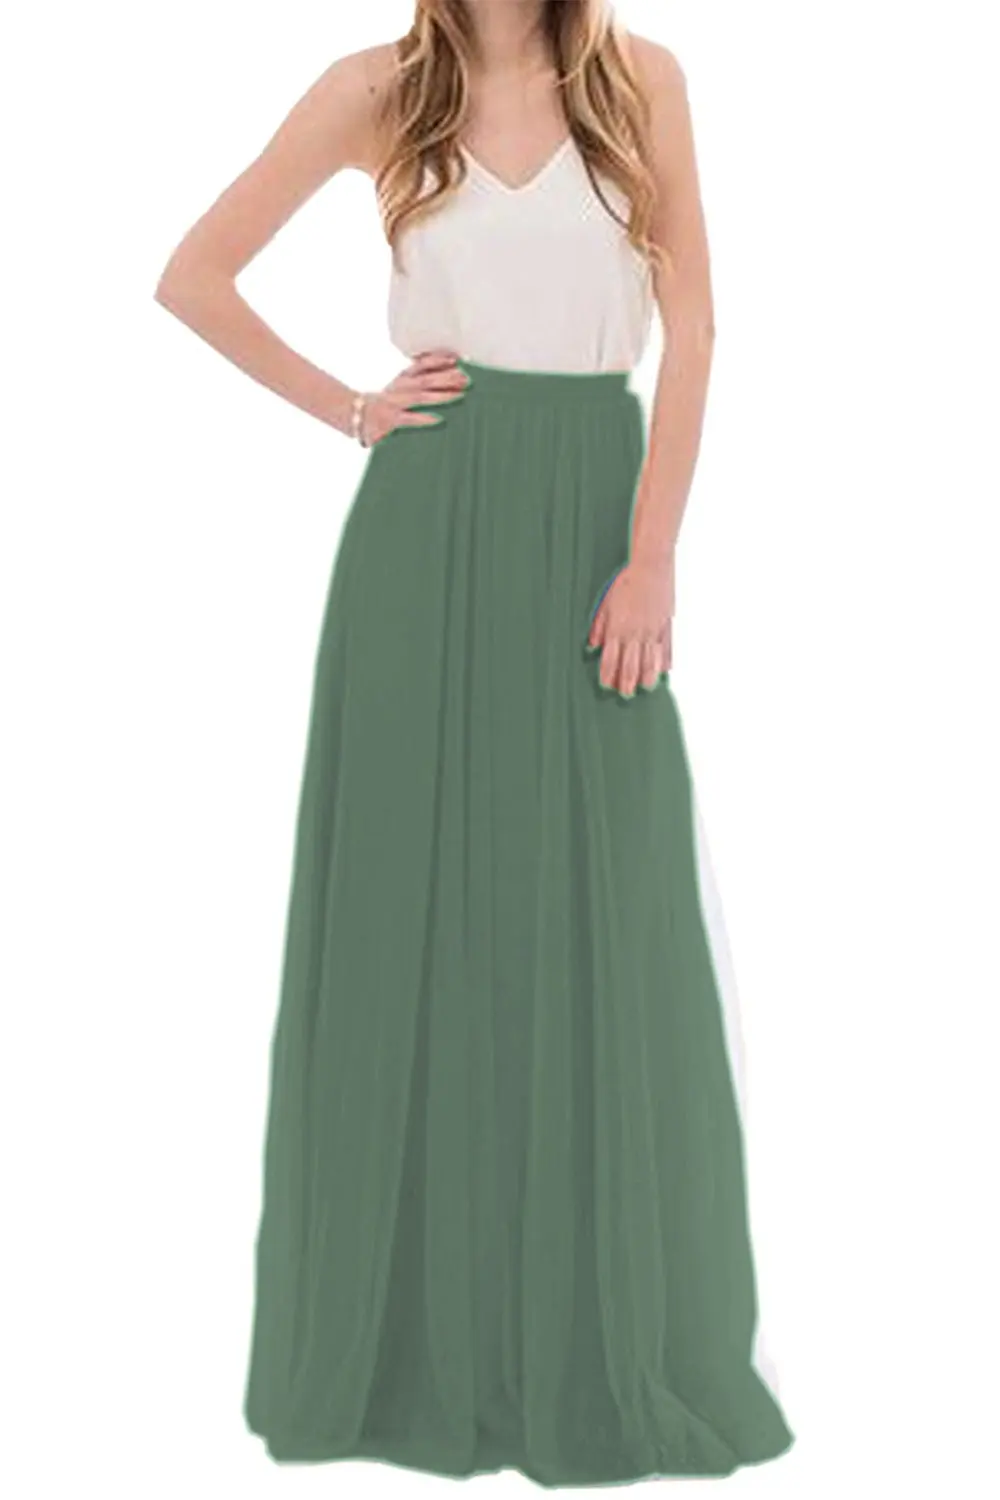 Женская летняя фатиновая юбка, длинная юбка подружки невесты, румяные юбки для выпускного вечера/юбка макси для подружки невесты, вечерние платья Vestidos - Цвет: 661 Teal green